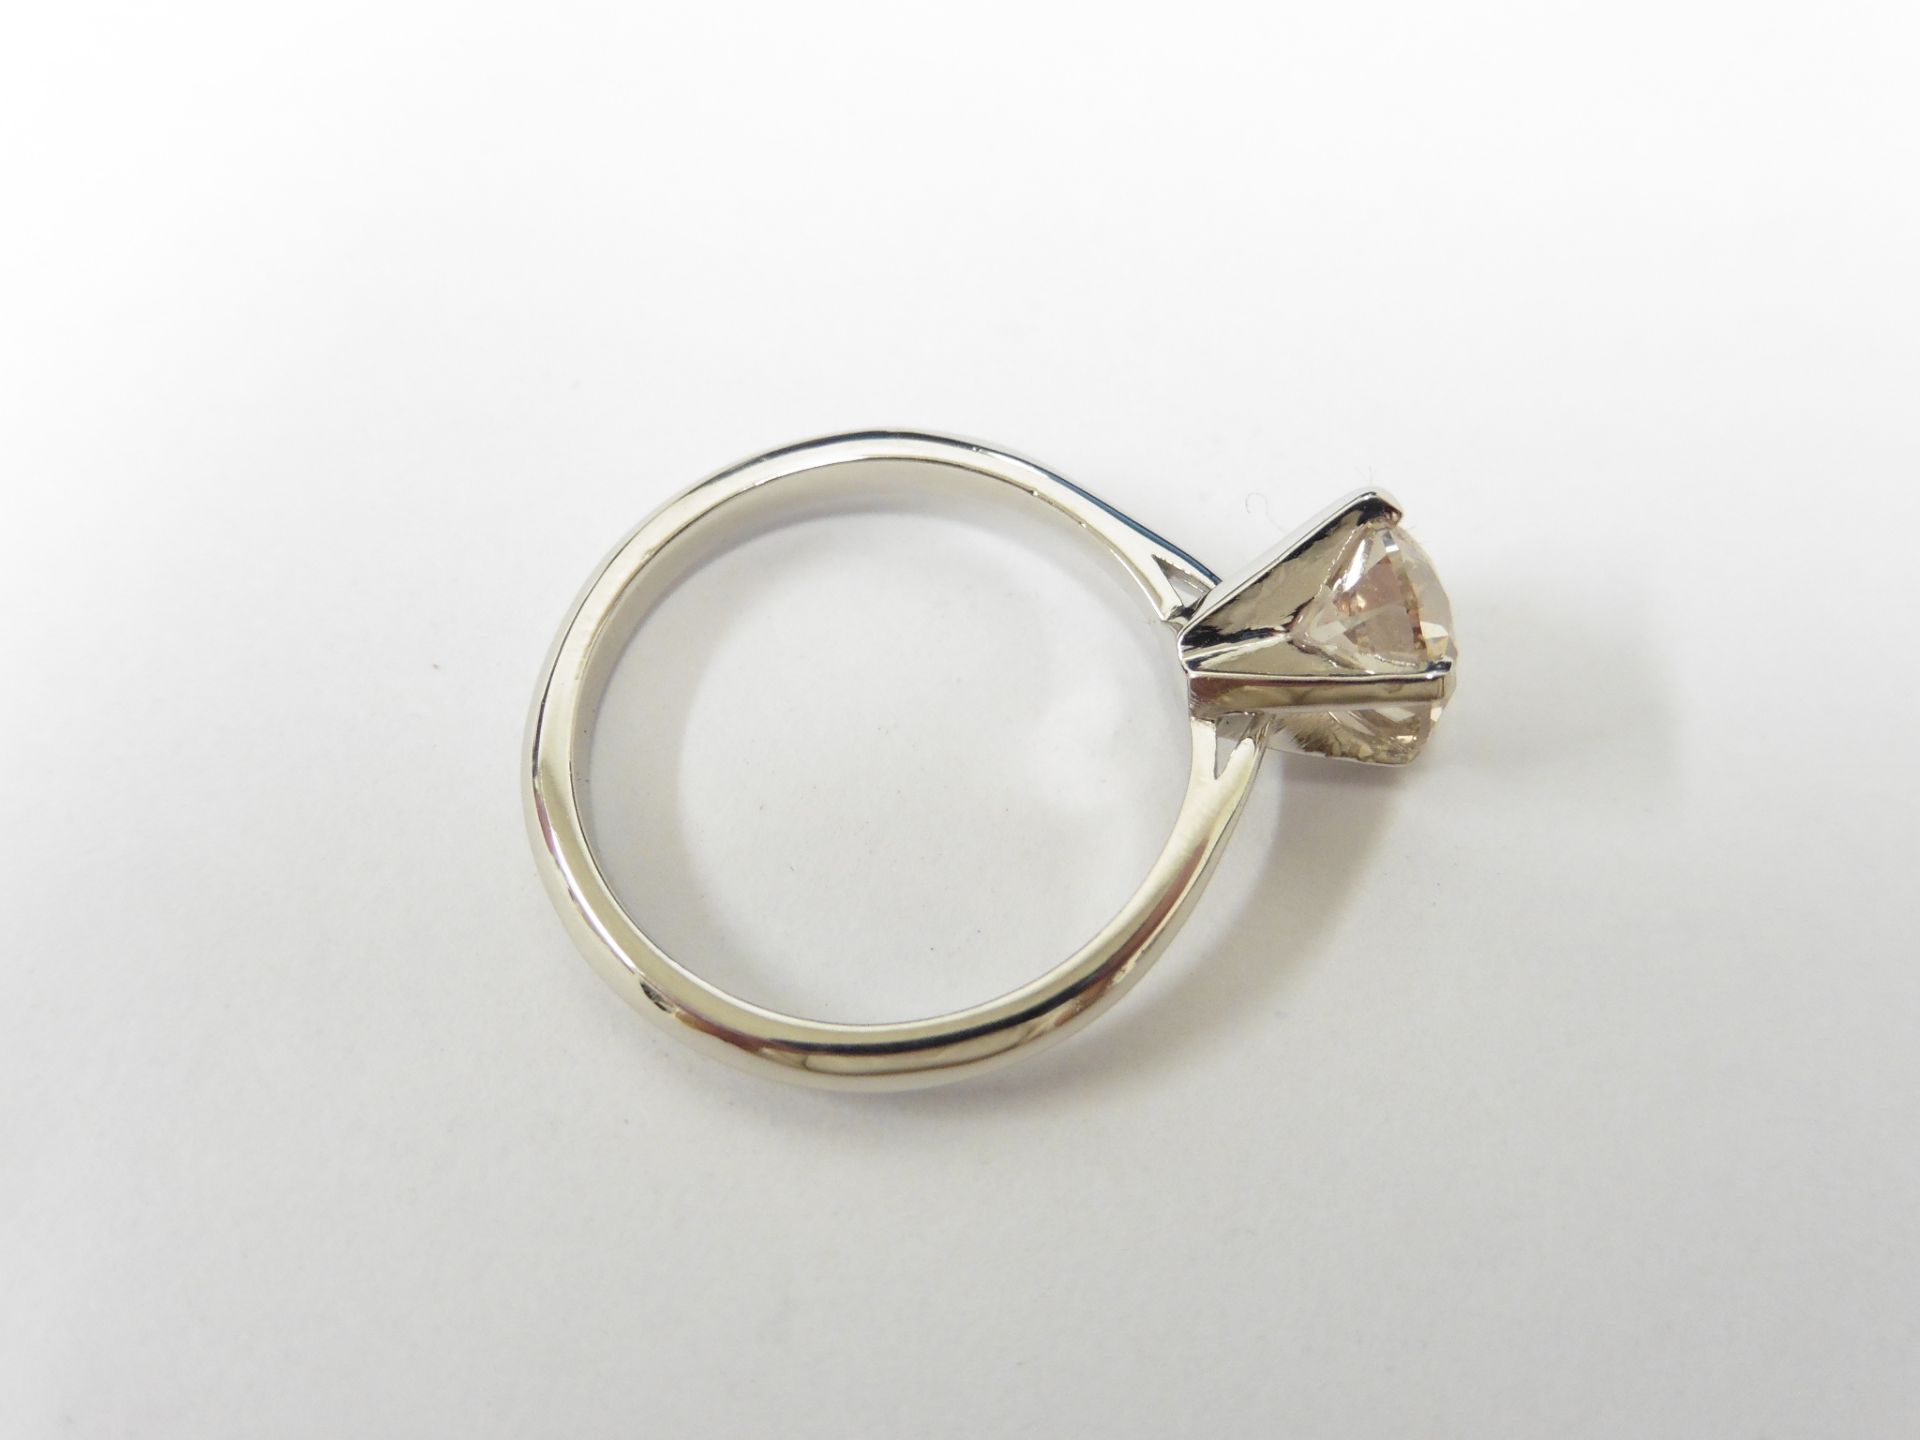 1.27Ct Diamond Solitaire Ring Set In Platinum. - Image 2 of 3